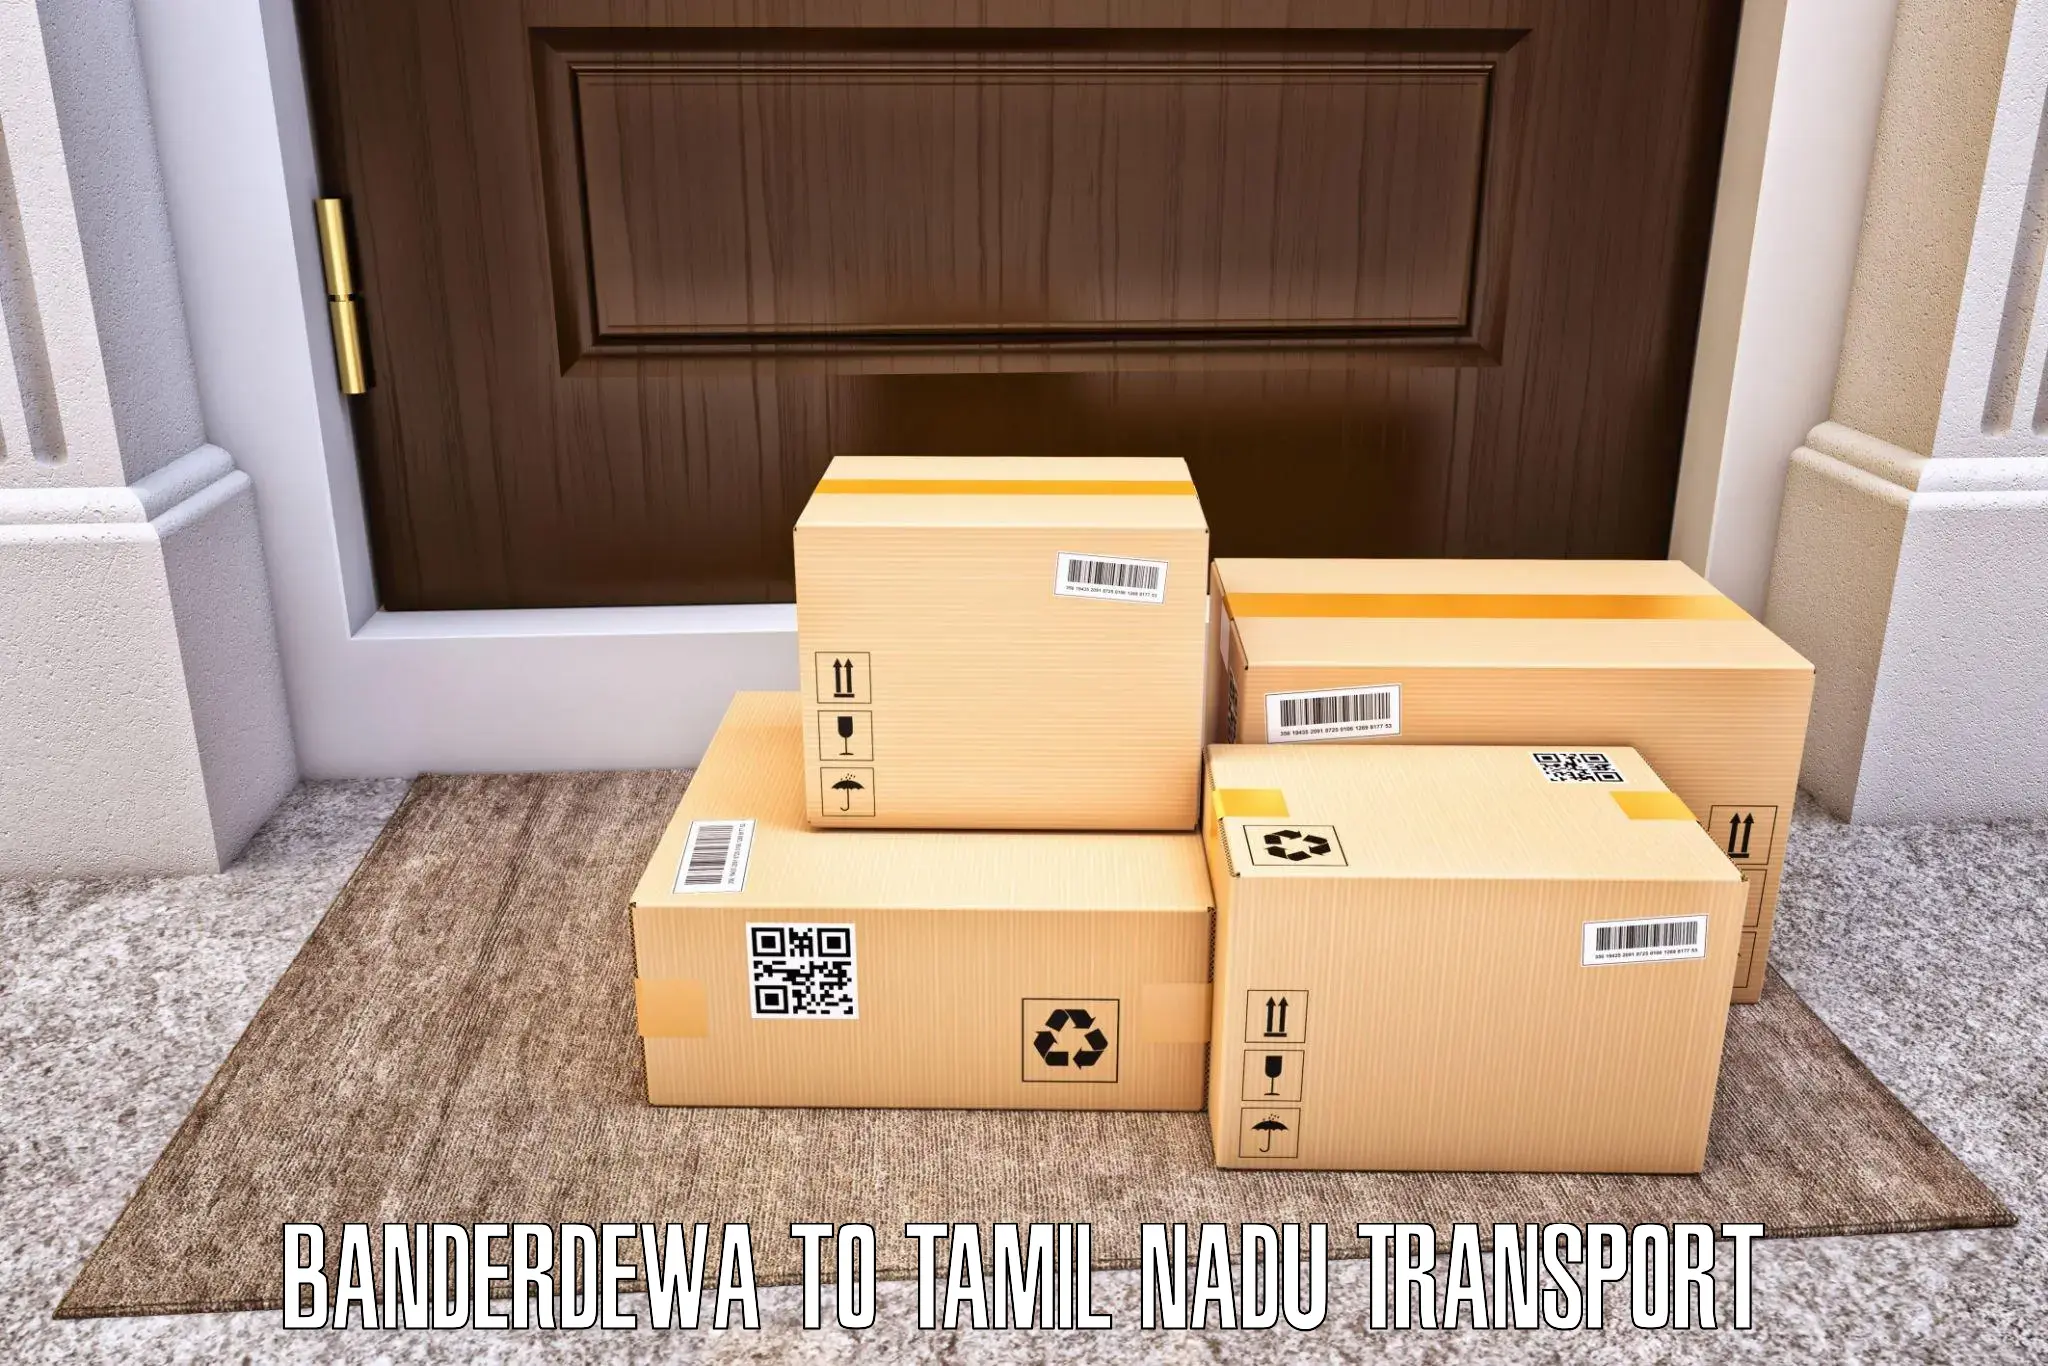 Container transportation services Banderdewa to Tiruchirappalli